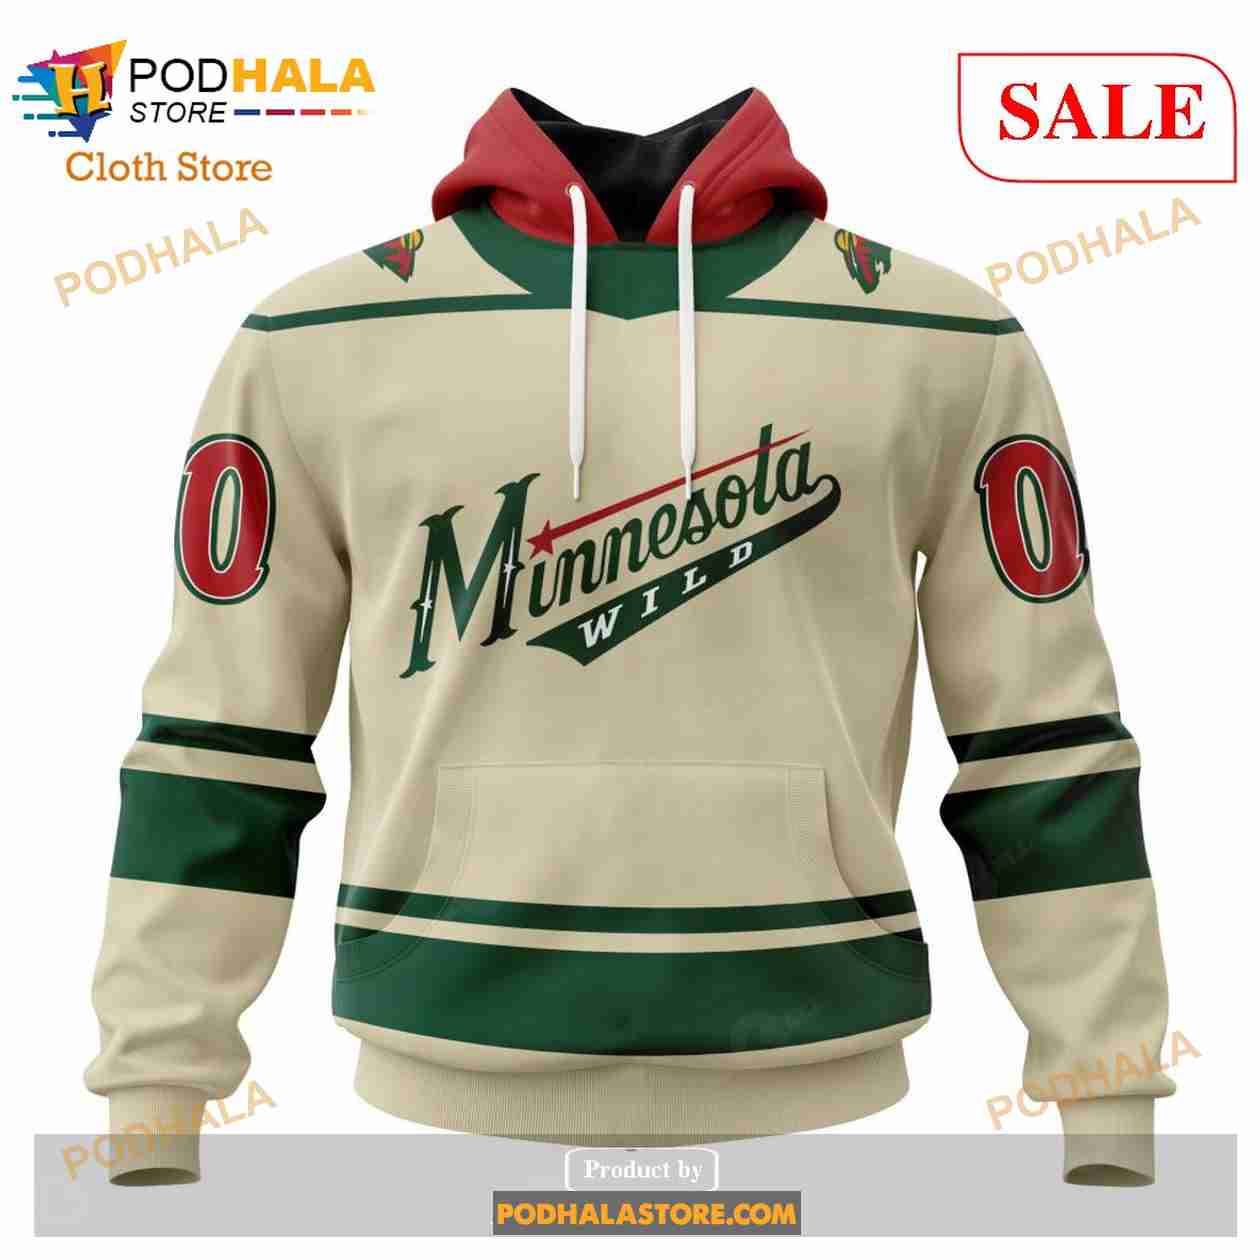 Minnesota Wild Sweatshirt, Vintage Wild Hockey Unisex Shirt, Minnesota Wild  Hockey Tee, Hockey Fan Gift Shirt, Minnesota Hockey Hoodie